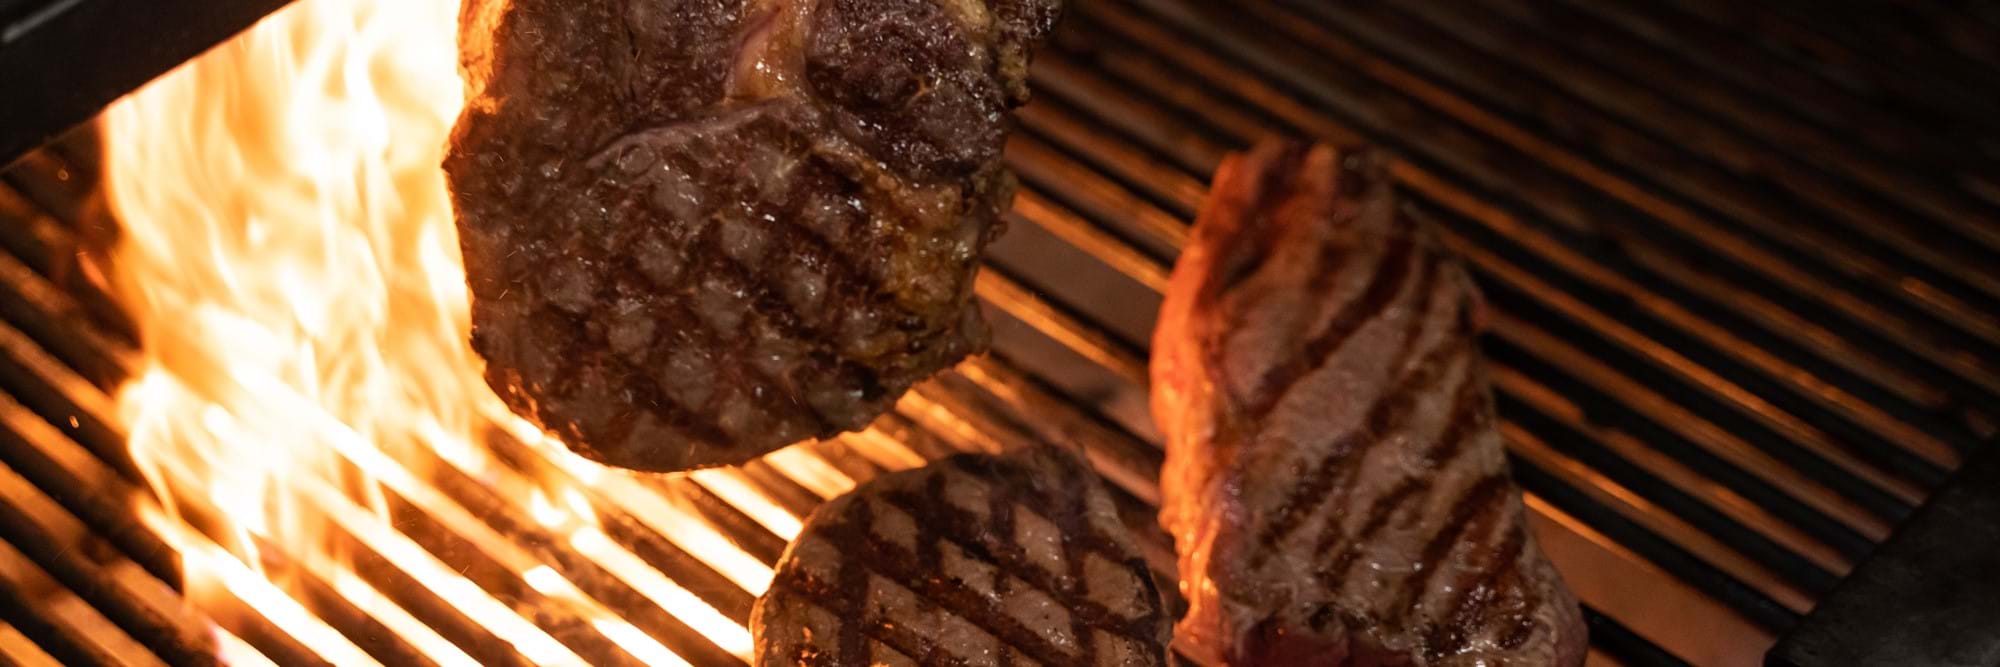 Steak on grill at Zelman Meats restaurant in London